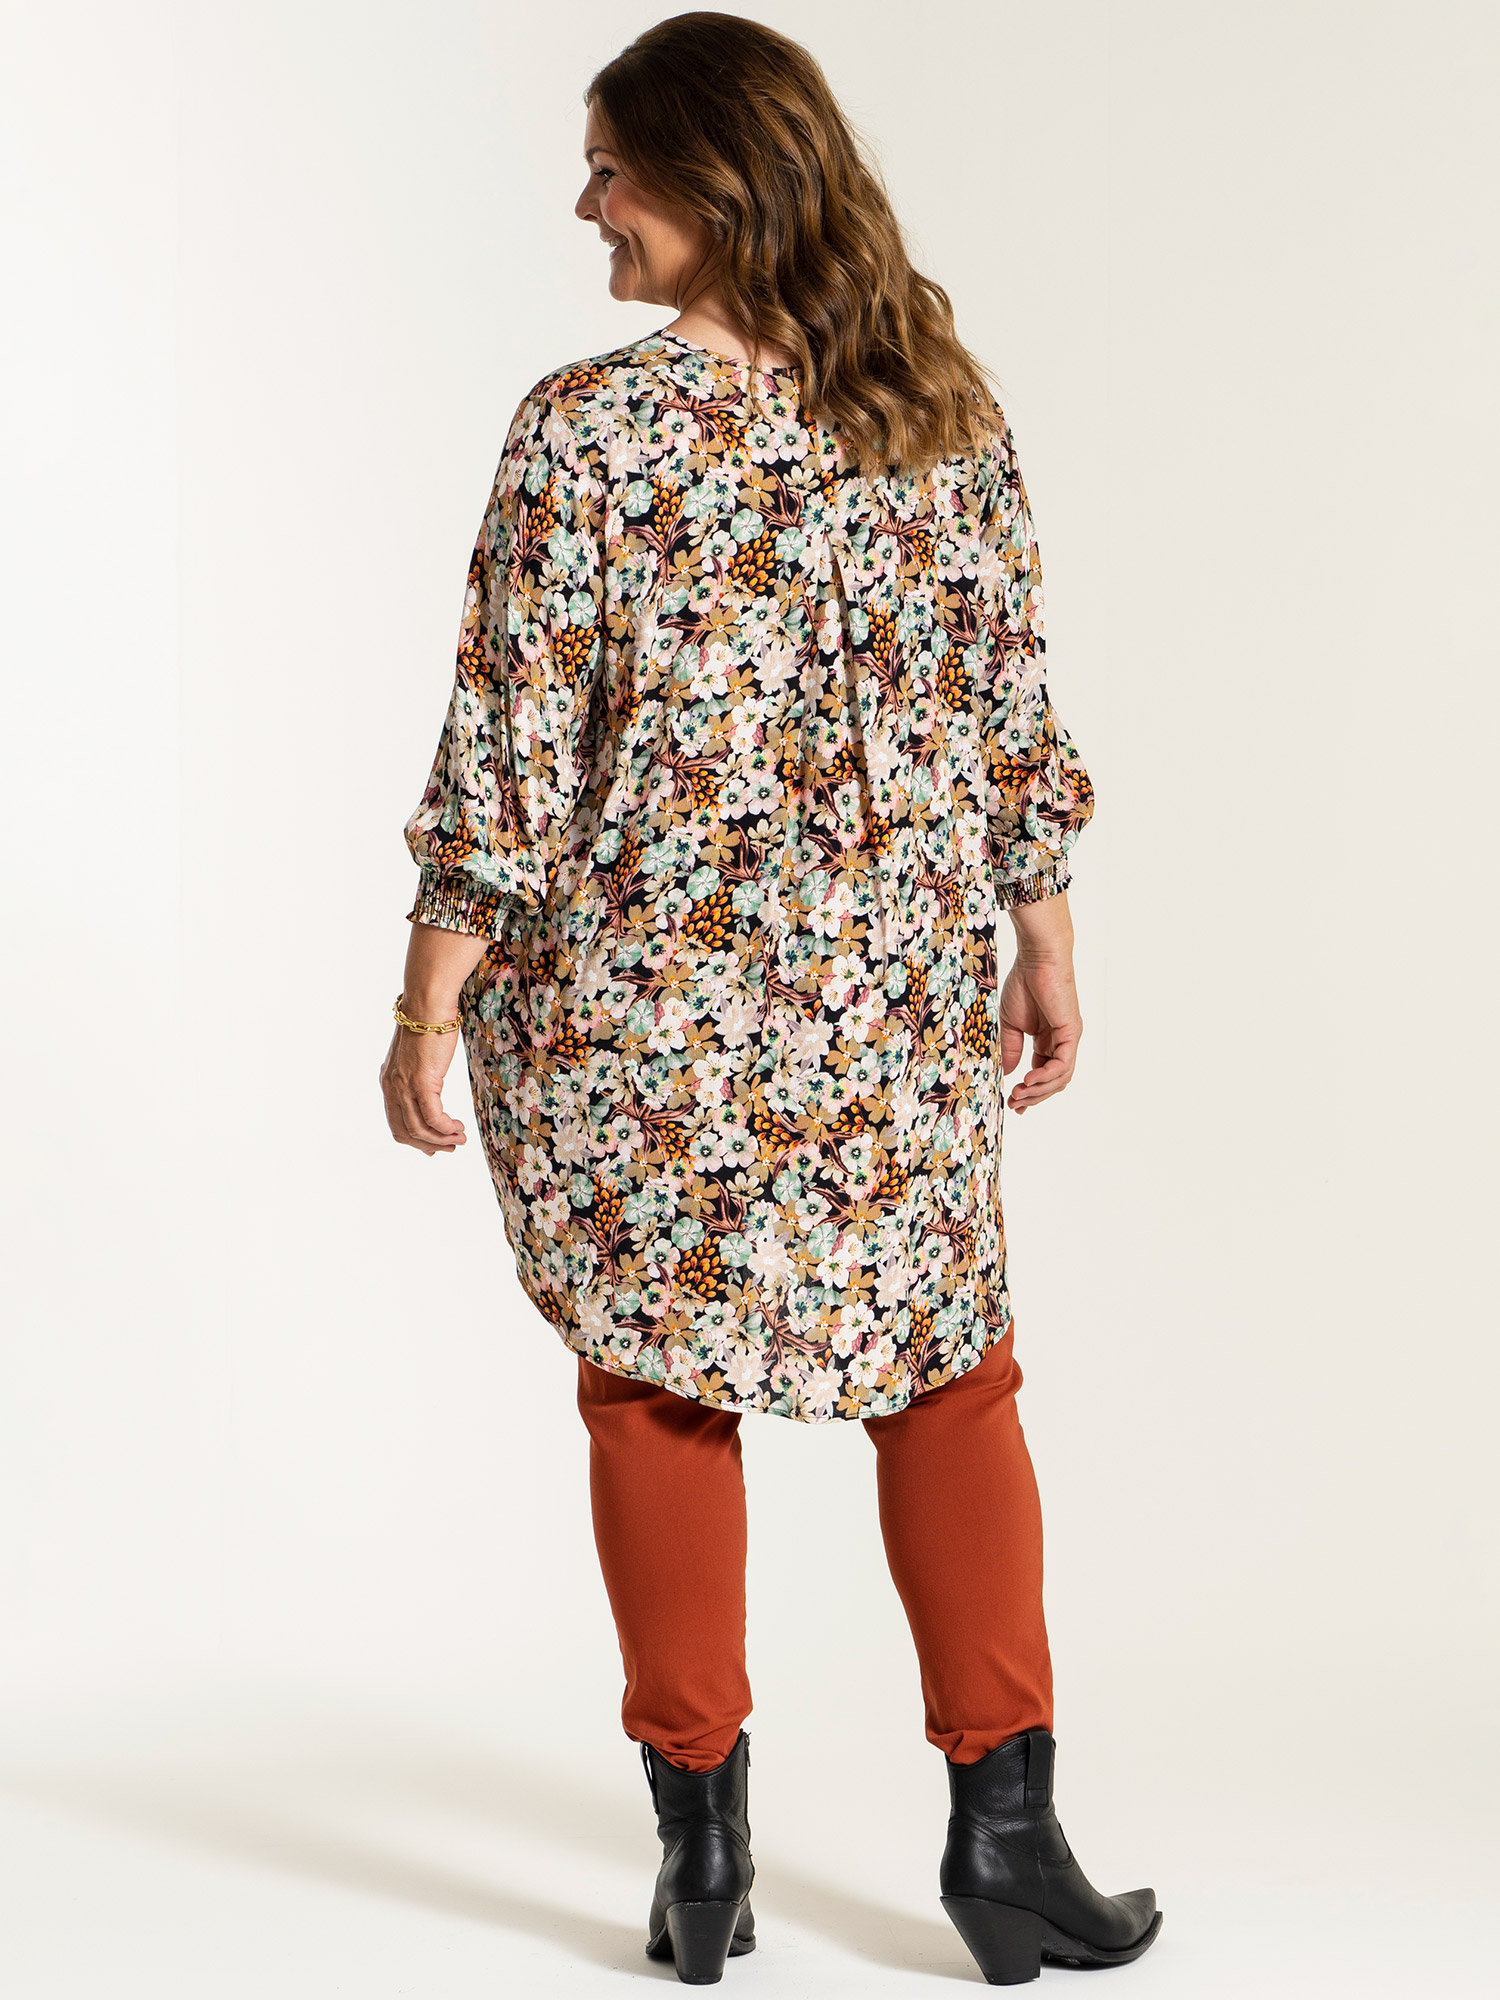 SAMIRA - Viskose tunika med print fra Gozzip